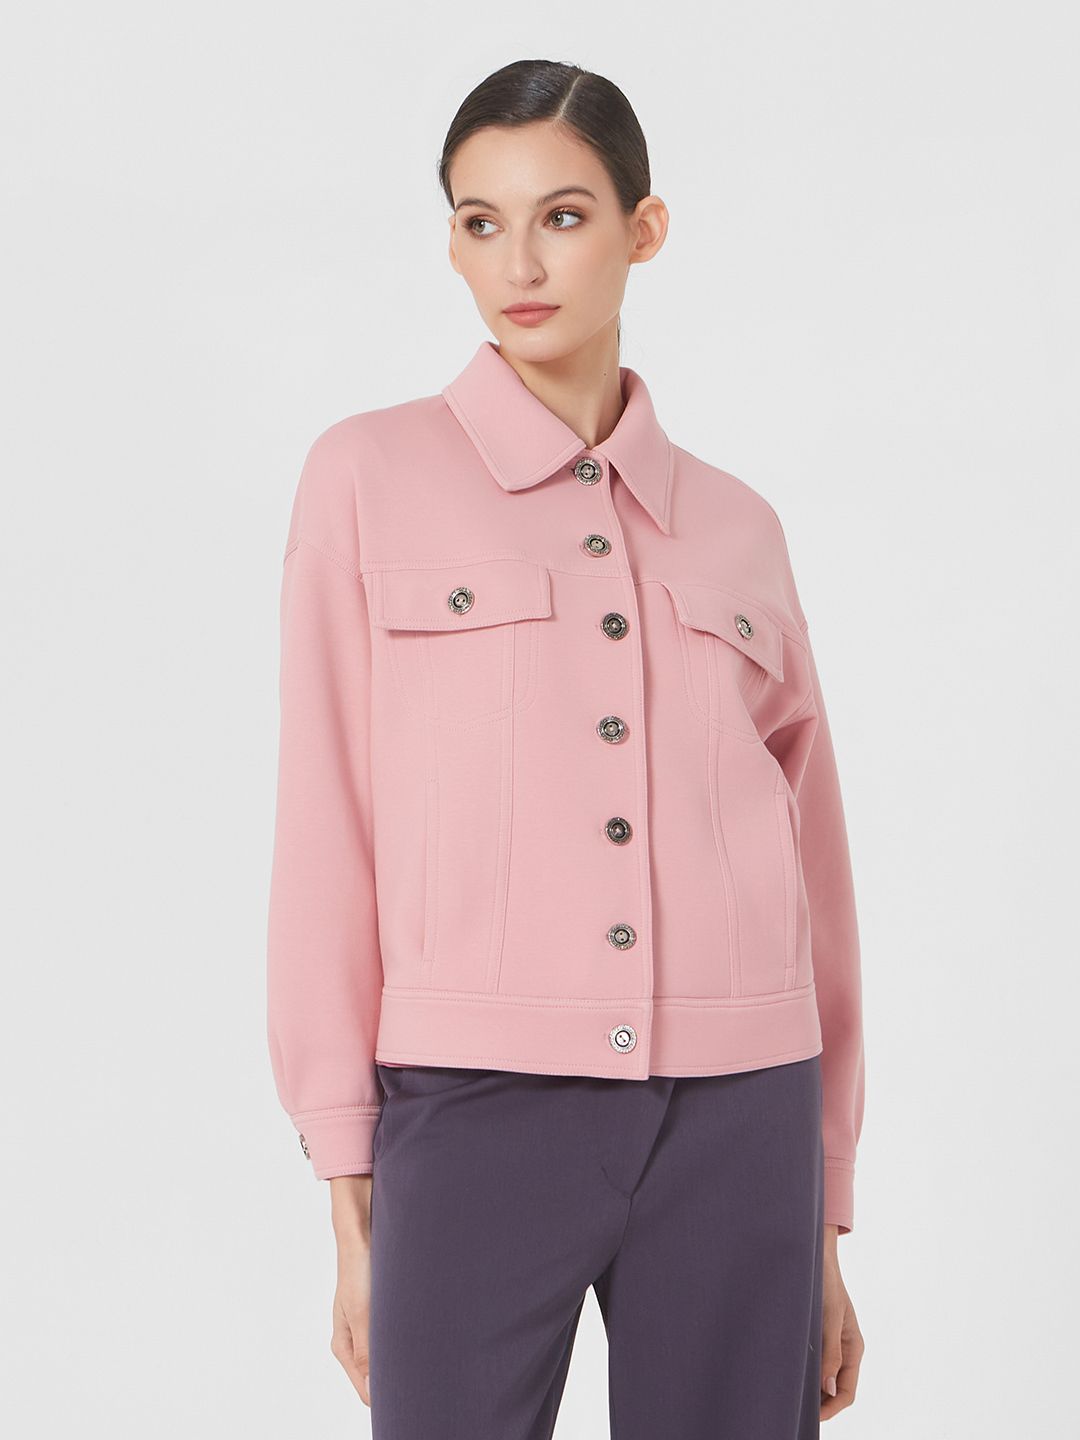 Куртка женская Lo 02241003 розовая 52 RU